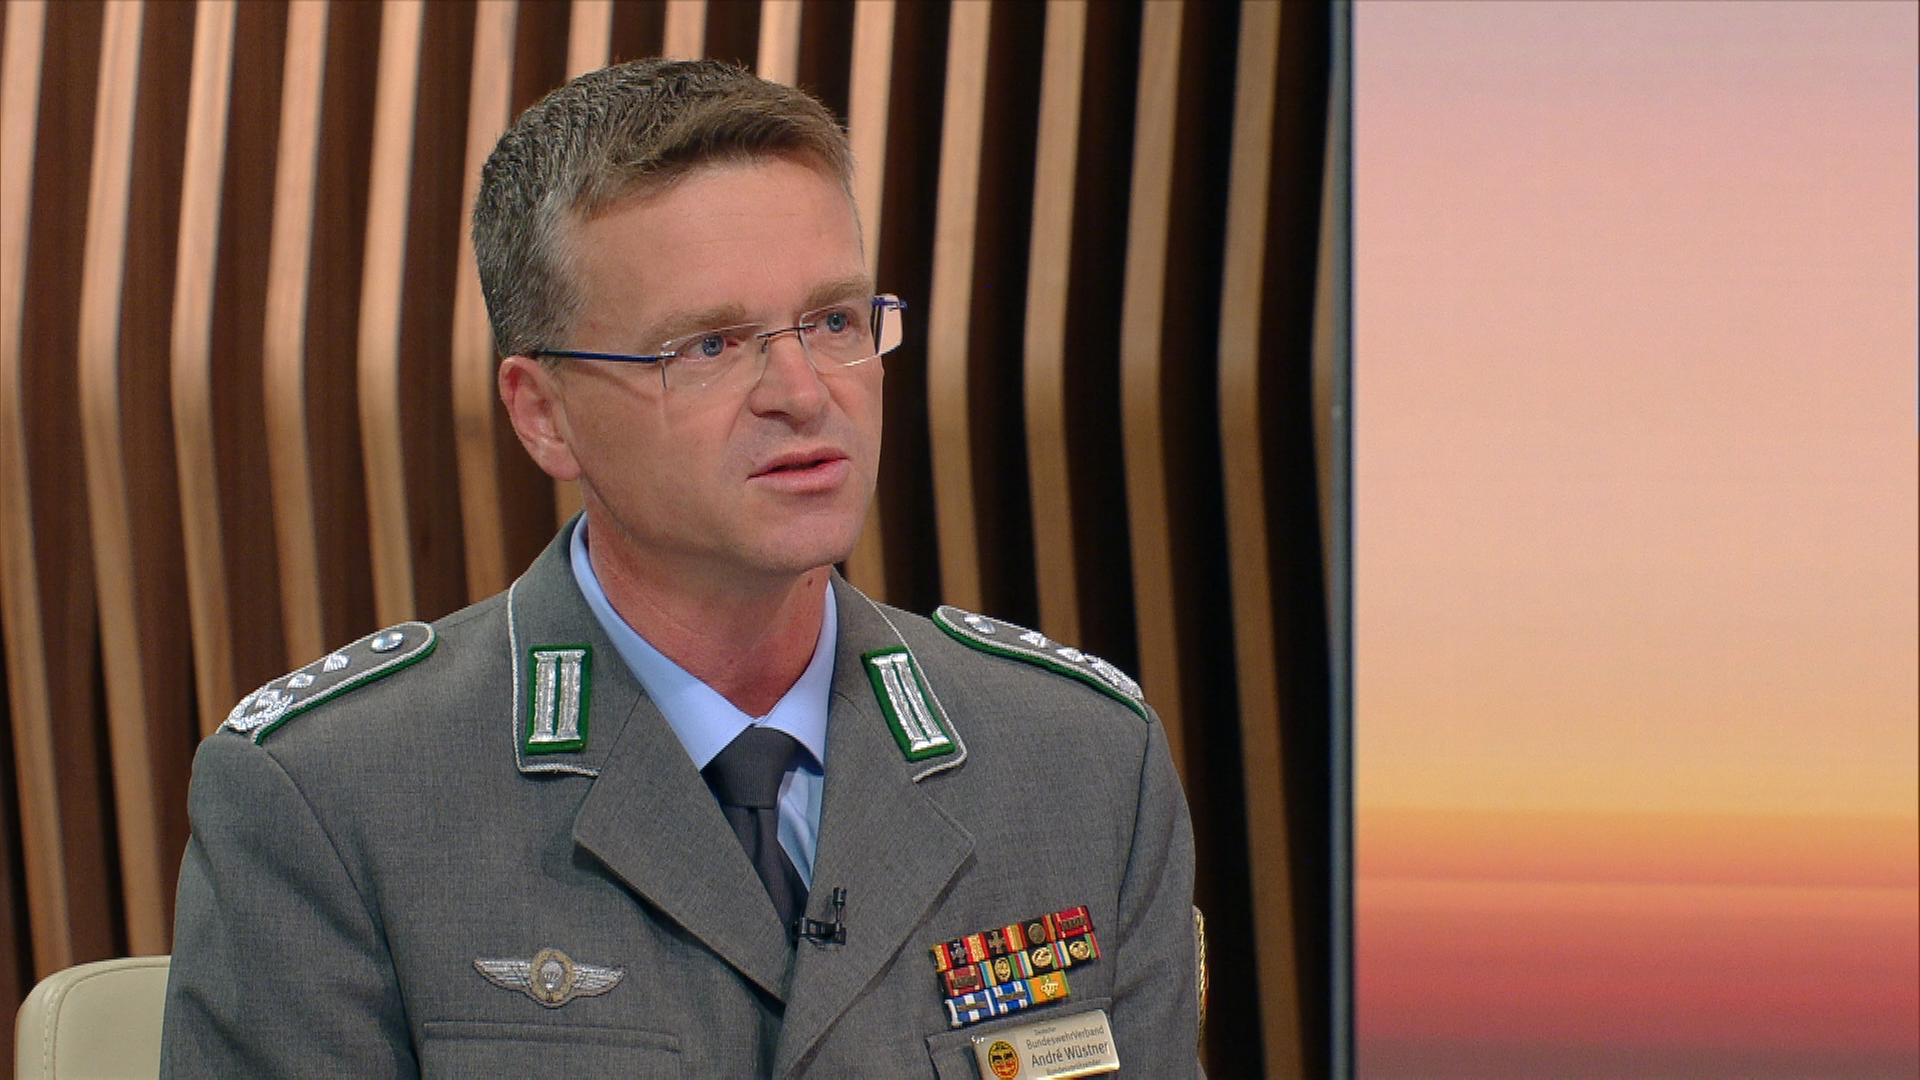 André Wüstner, Vorsitzender Deutscher Bundeswehrverband, zu den Plänen der Bundeswehr